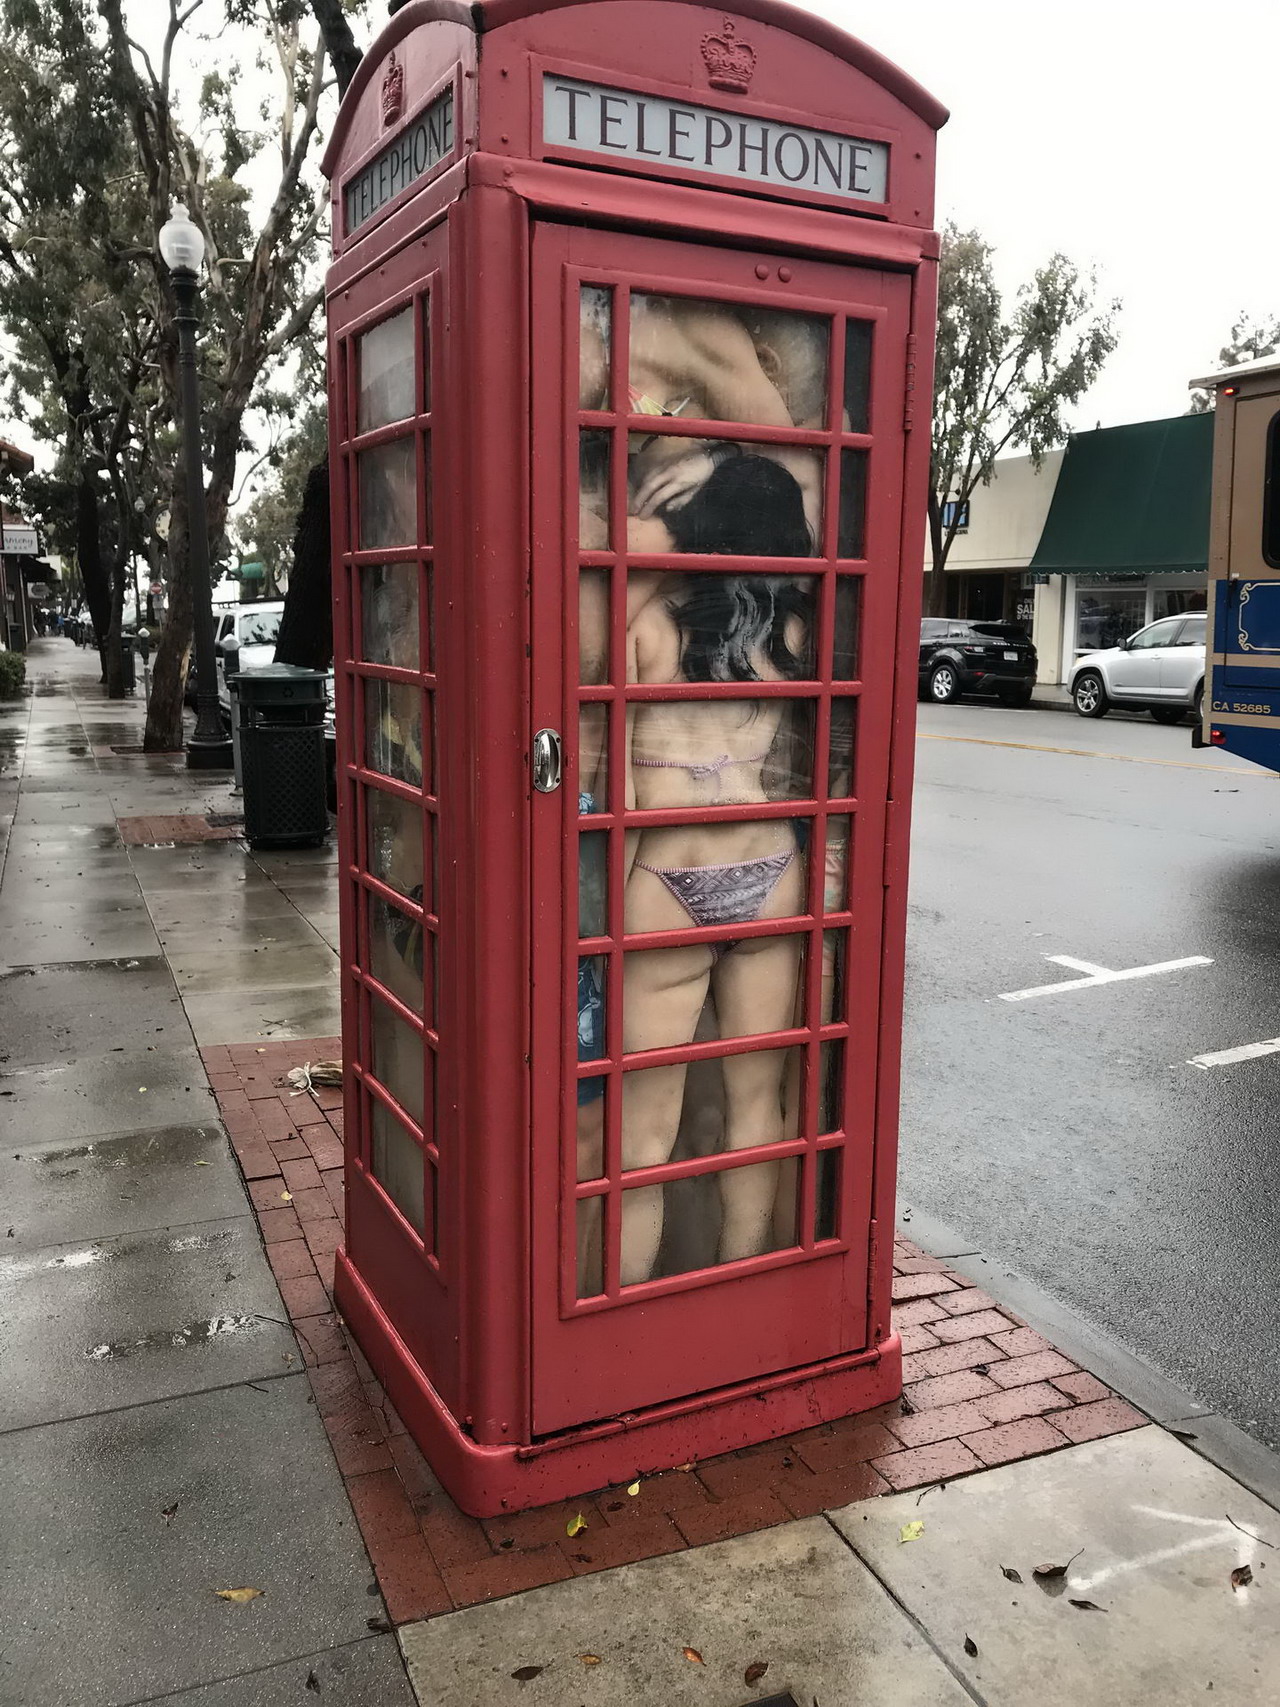 stuffed telephone booth - Telephone